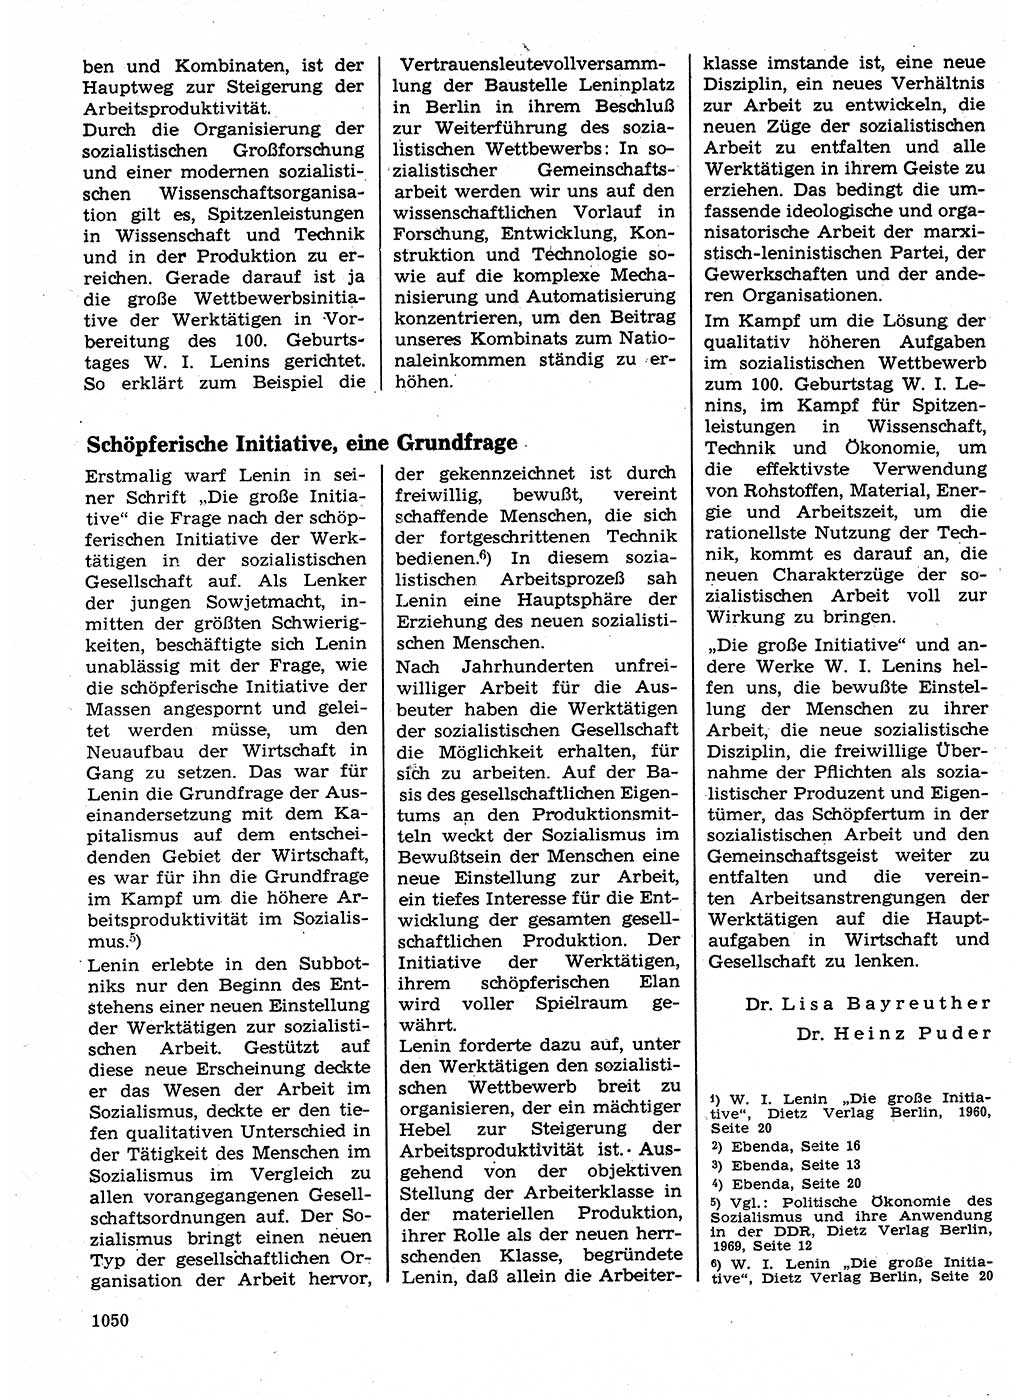 Neuer Weg (NW), Organ des Zentralkomitees (ZK) der SED (Sozialistische Einheitspartei Deutschlands) für Fragen des Parteilebens, 24. Jahrgang [Deutsche Demokratische Republik (DDR)] 1969, Seite 1050 (NW ZK SED DDR 1969, S. 1050)